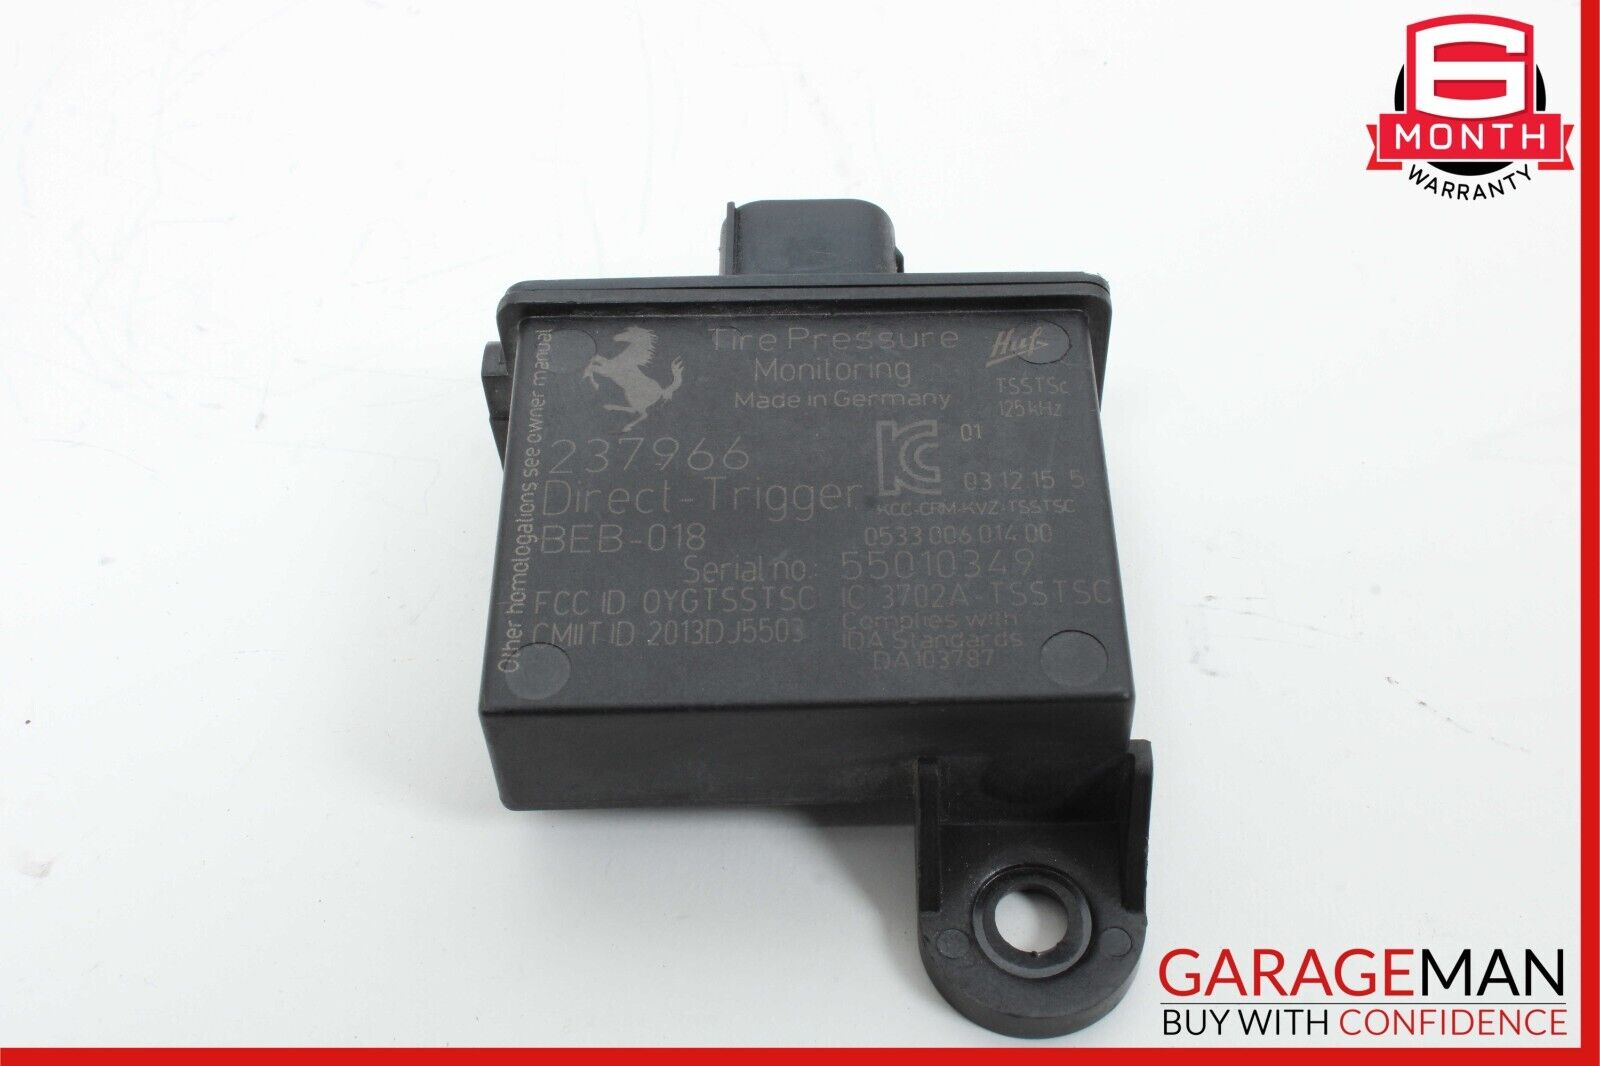 15-18 Ferrari California T Tire Pressure Monitoring System TPMS Receiver Module